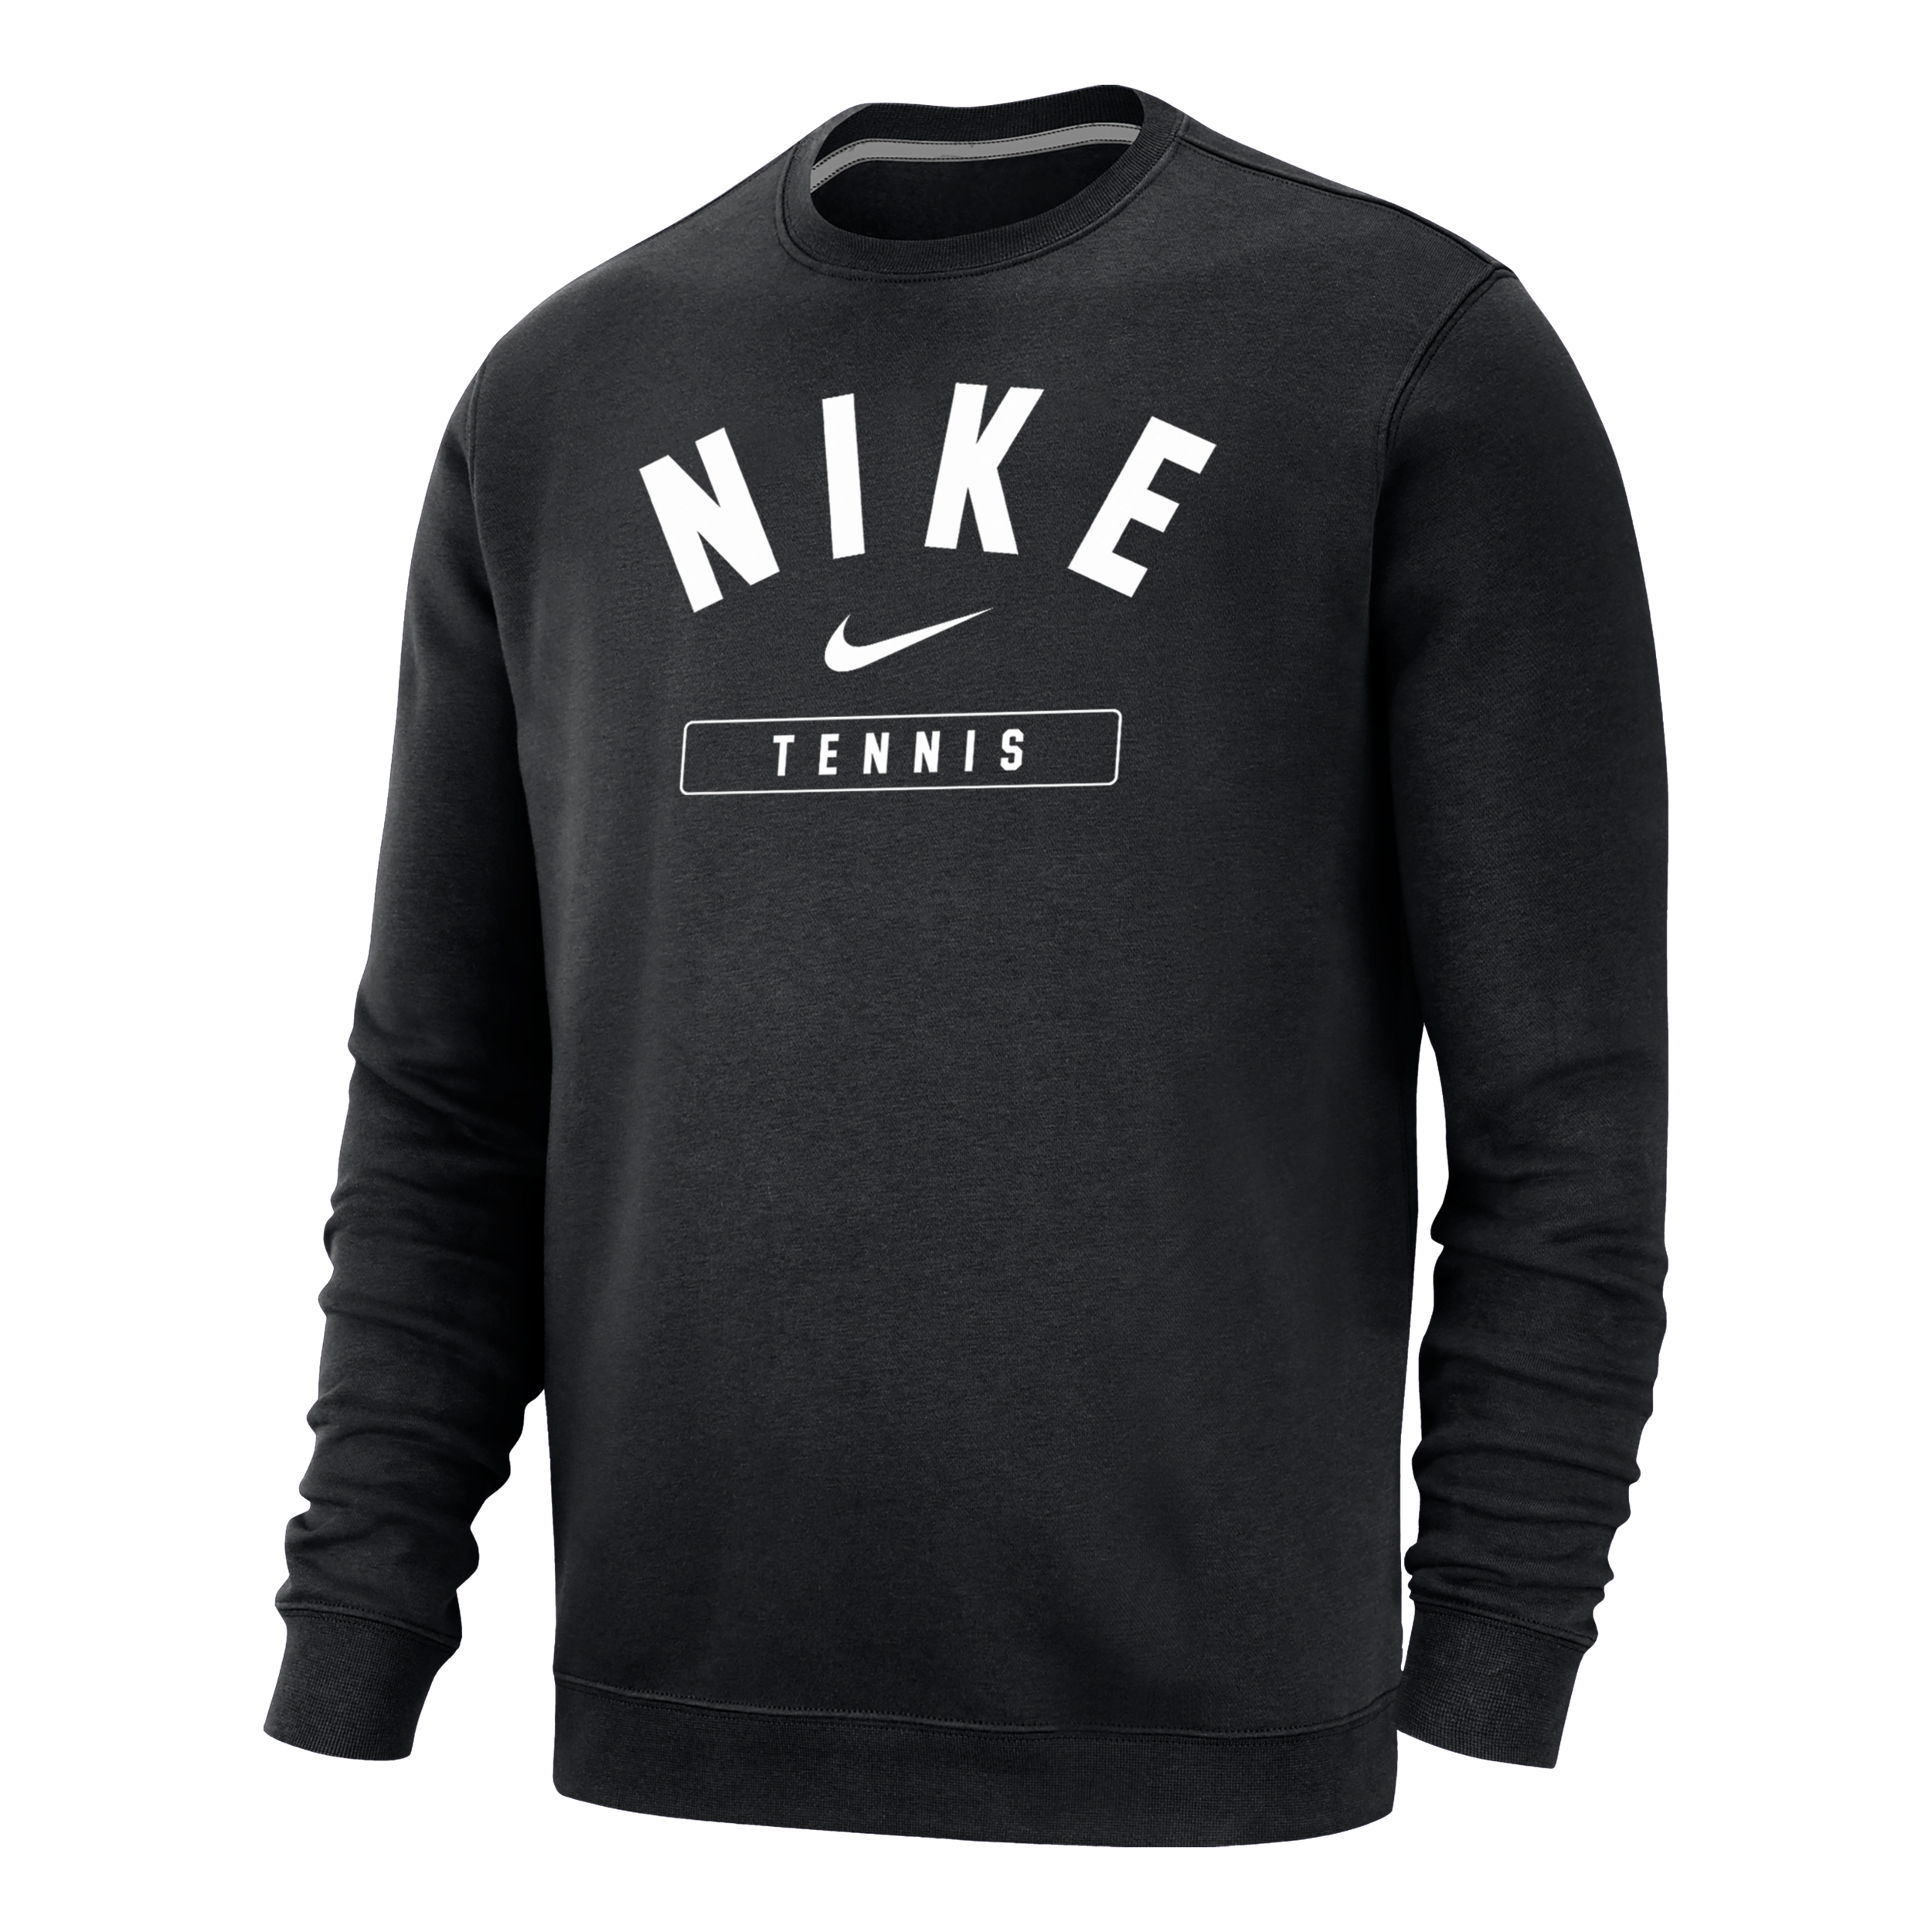 Nike Men's Tennis Crew-neck Sweatshirt In Black